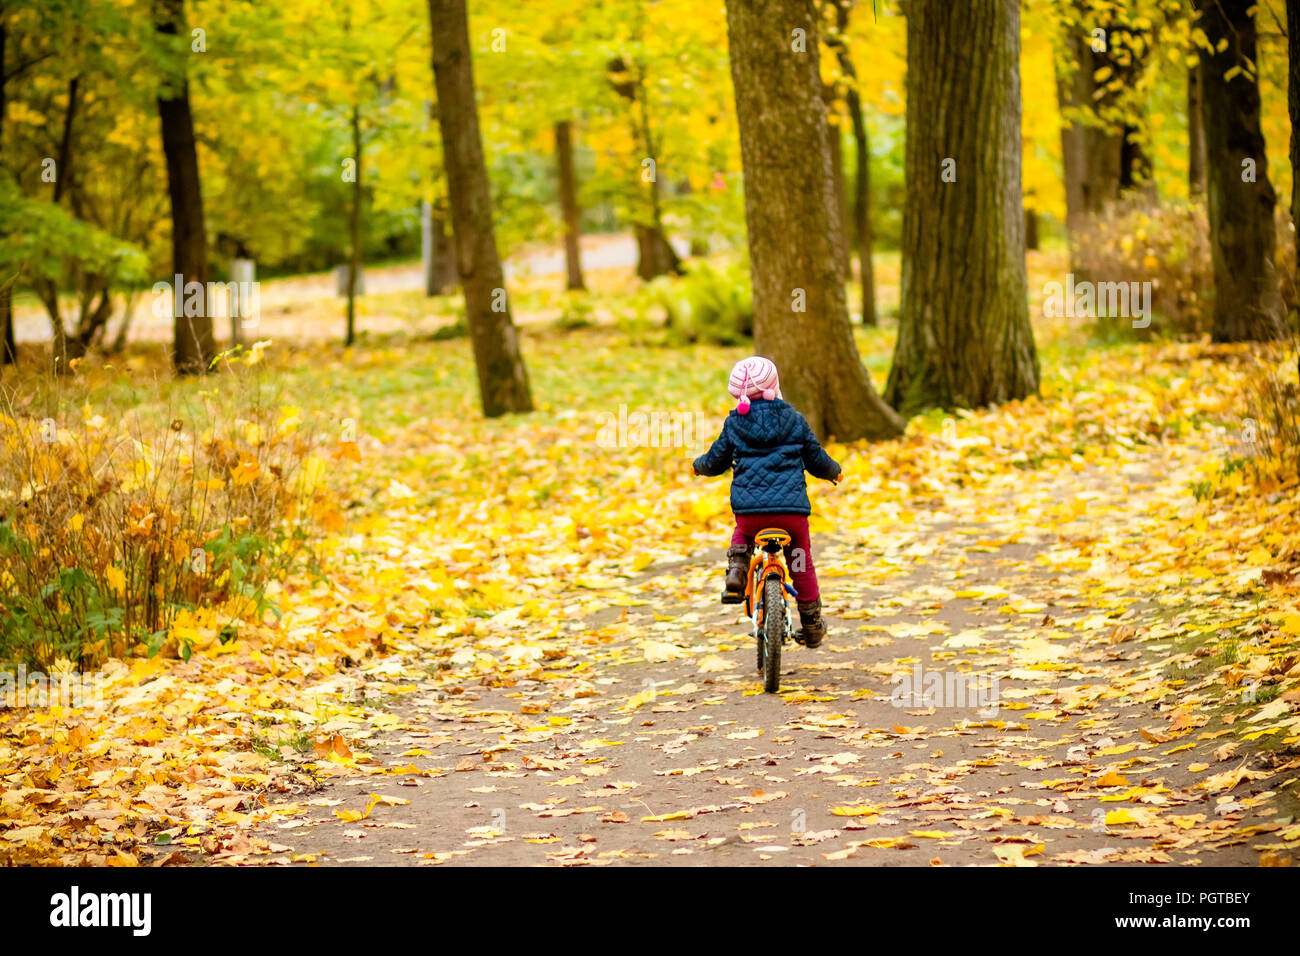 Kleines Mädchen auf einem Fahrrad im Park unterwegs mit Herbst Eiche und  Ahorn bewachsen. Zurück Blick auf Kleines Kind in blue coat Fahrradfahren.  Radfahrer im Herbst Park. Mädchen Radtouren im City Park